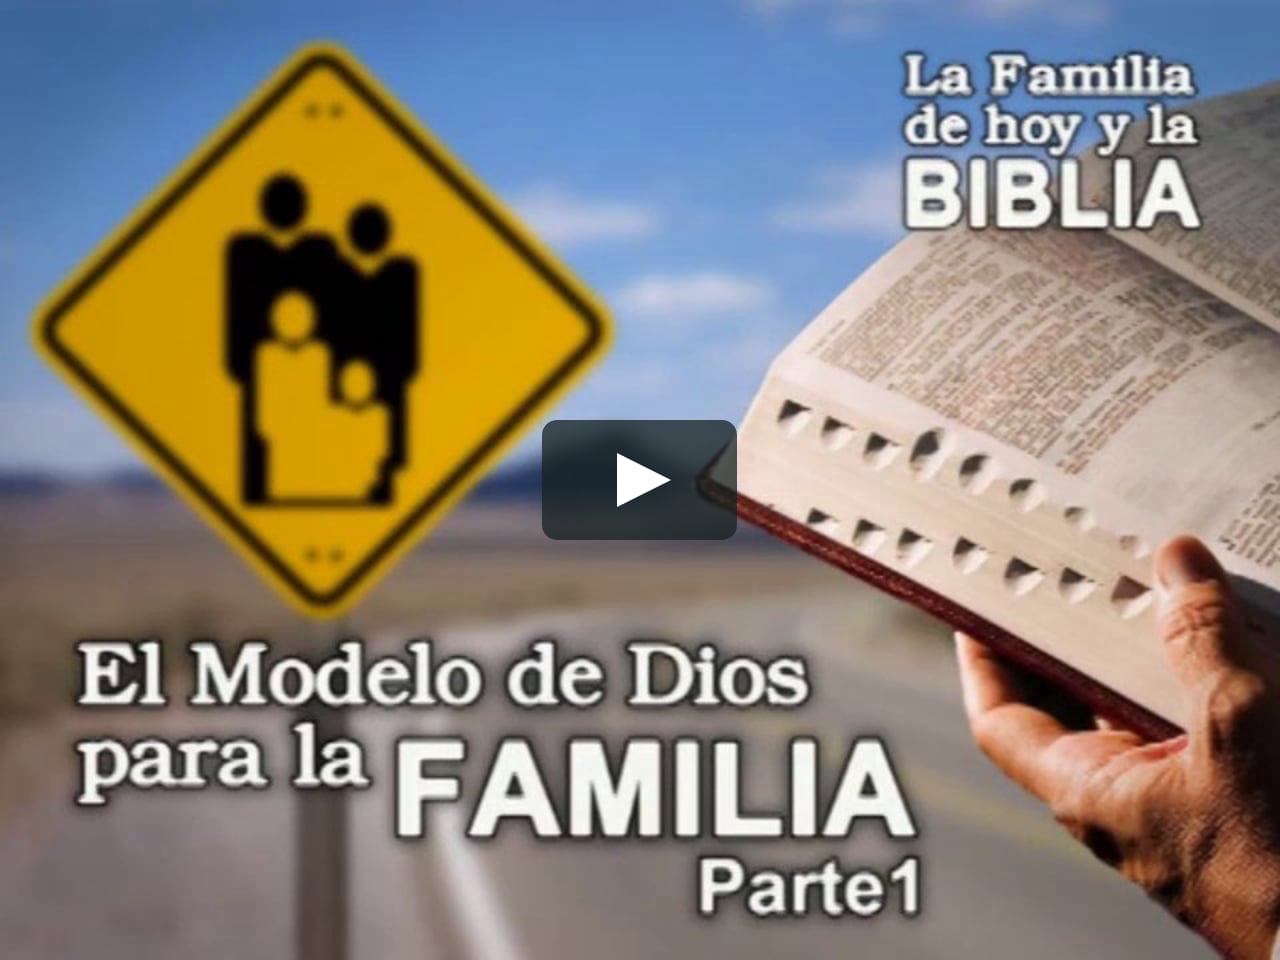 El Modelo de Dios para la Familia (Parte 1) on Vimeo